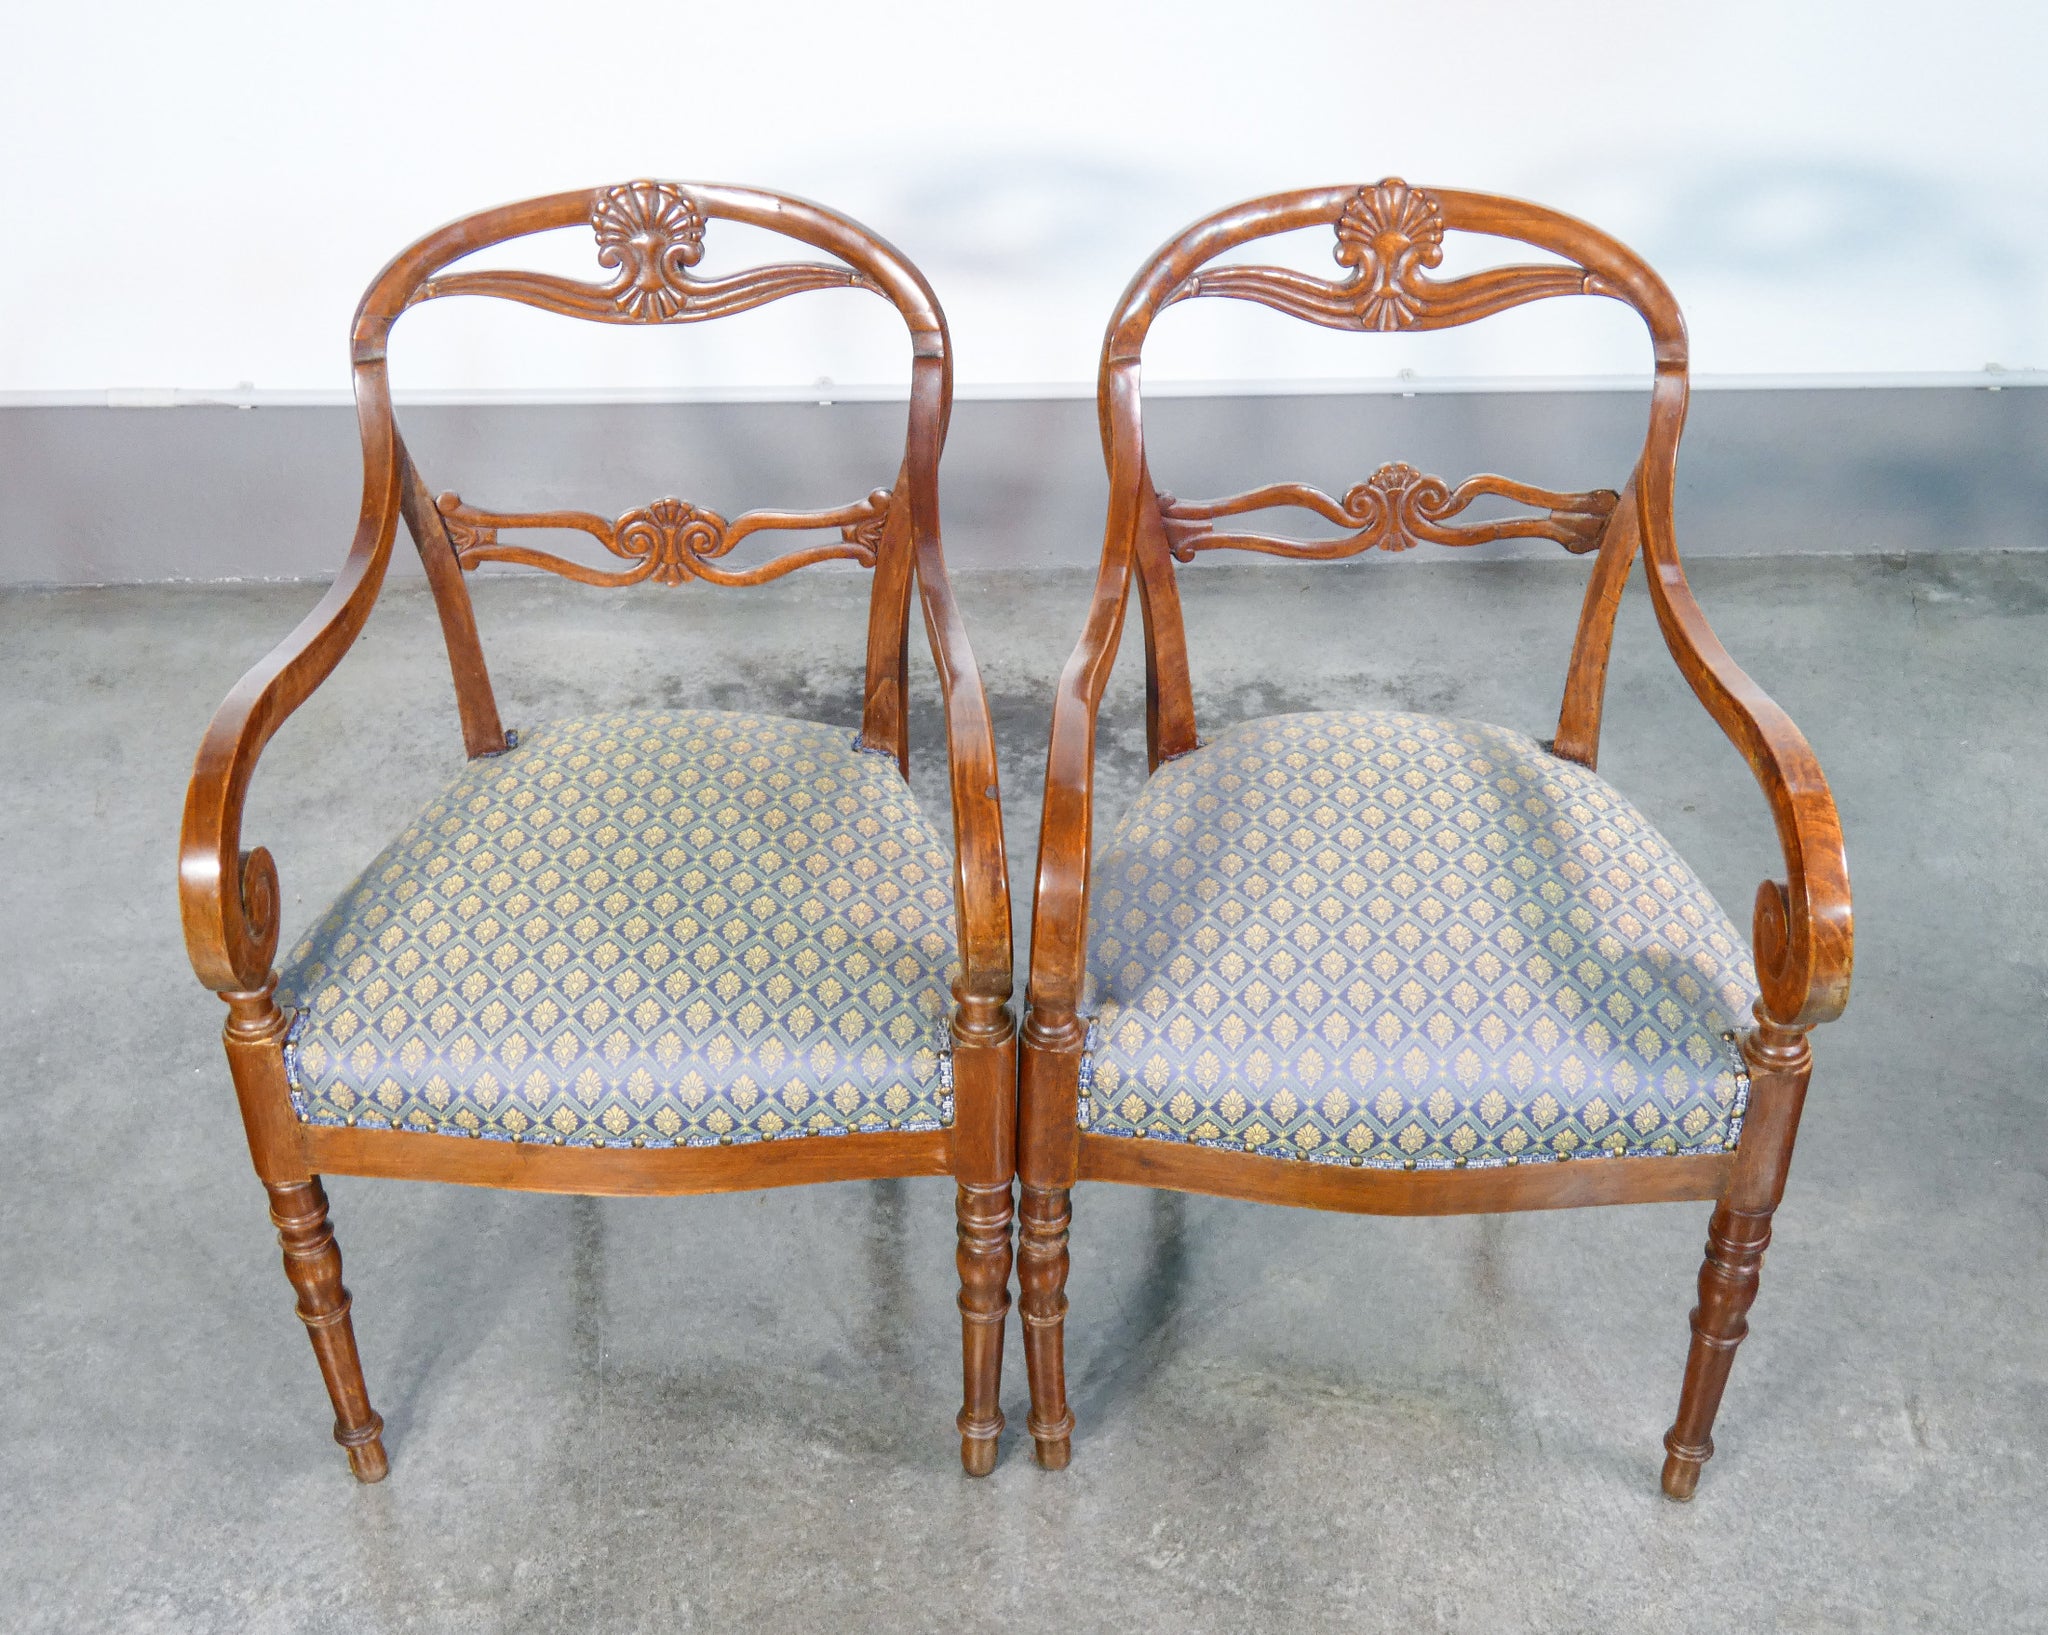 set 6 sedie restaurazione carlo x legno noce epoca 1800 sala da pranzo antico